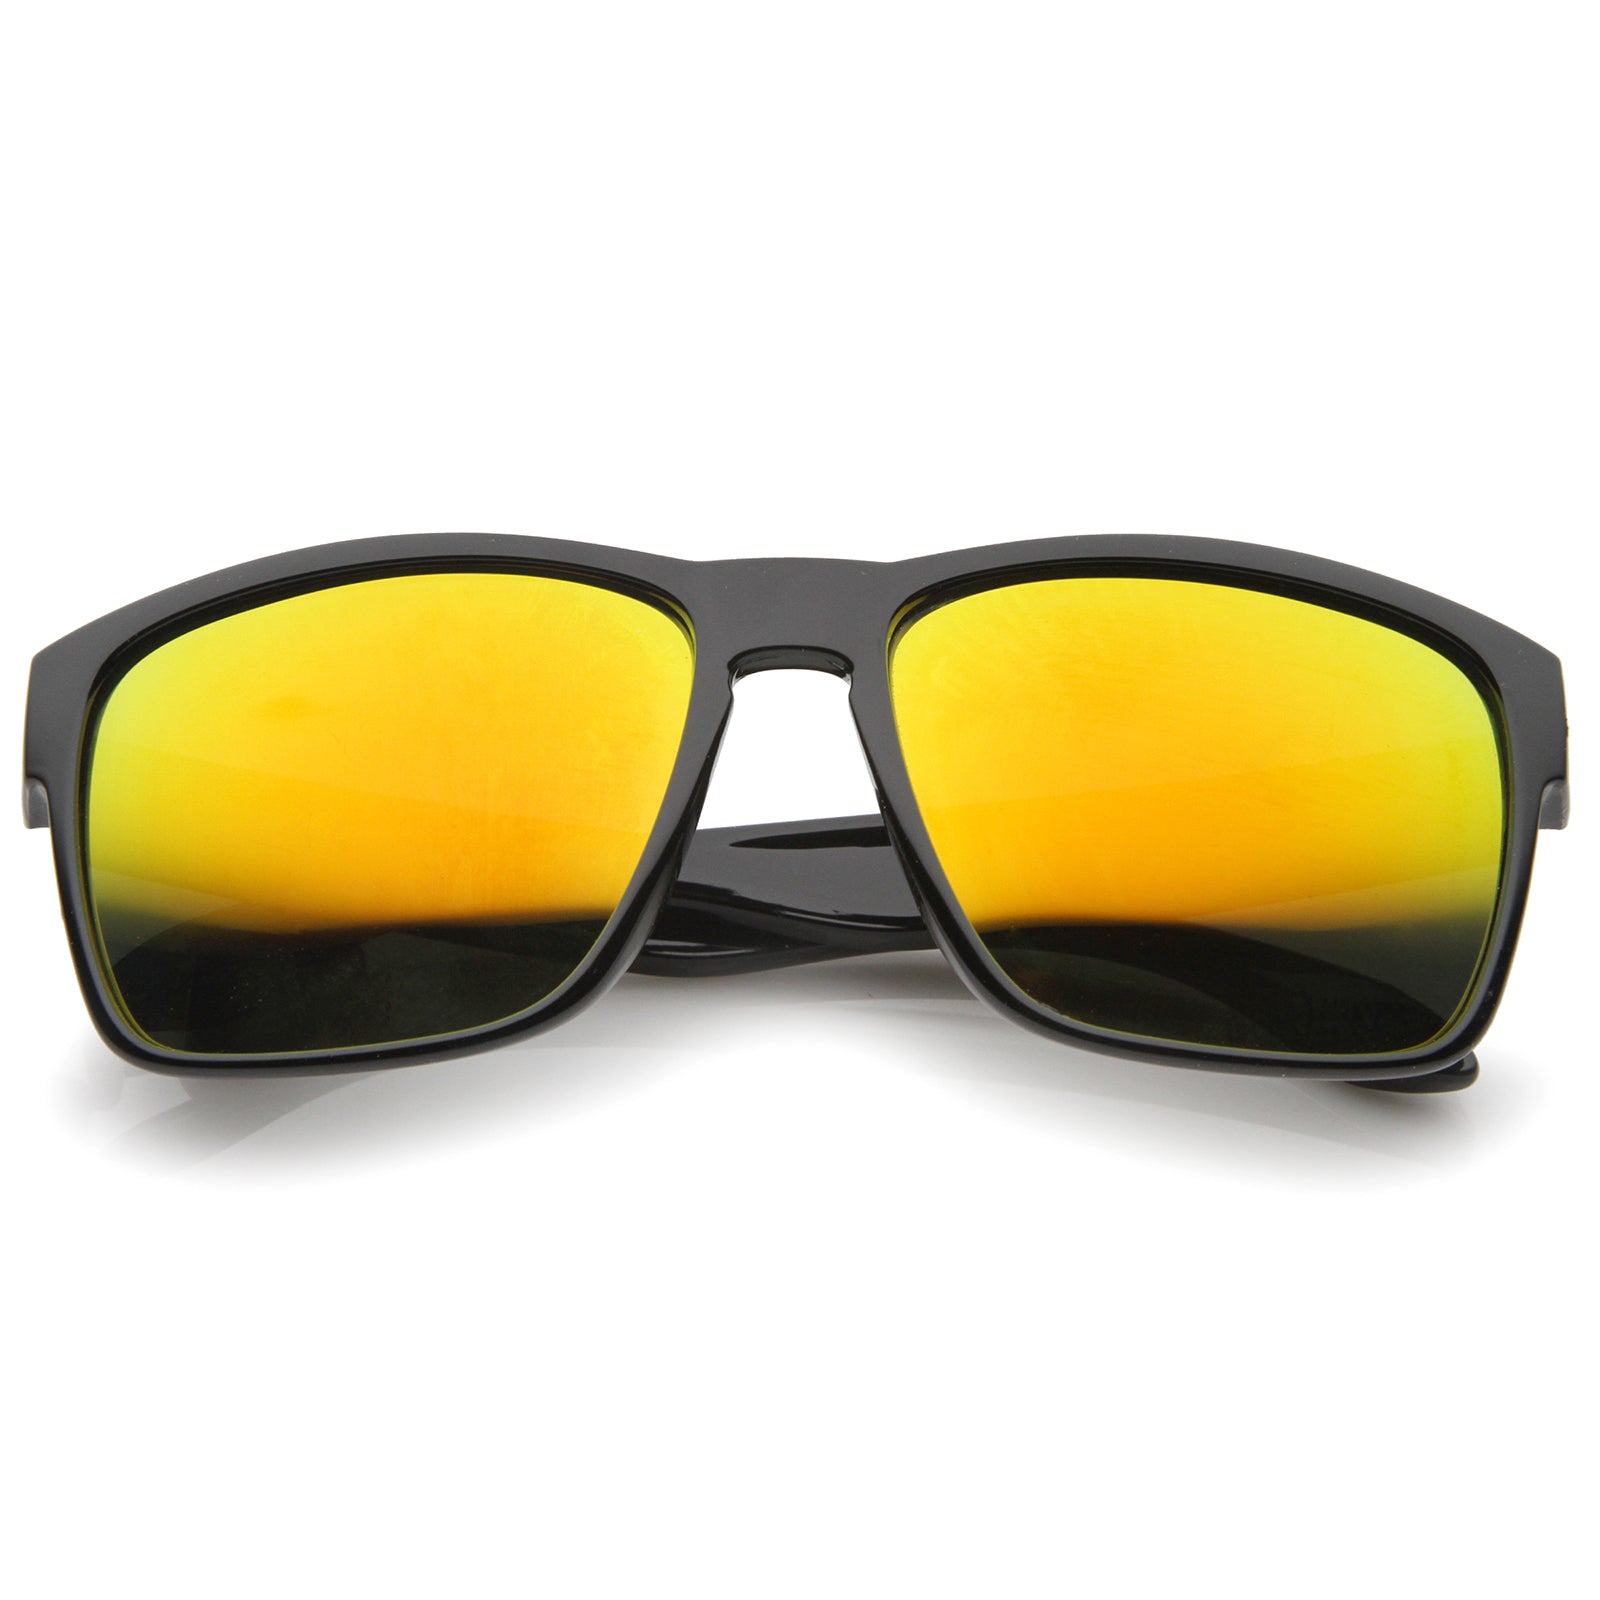 mirror lens sunglasses